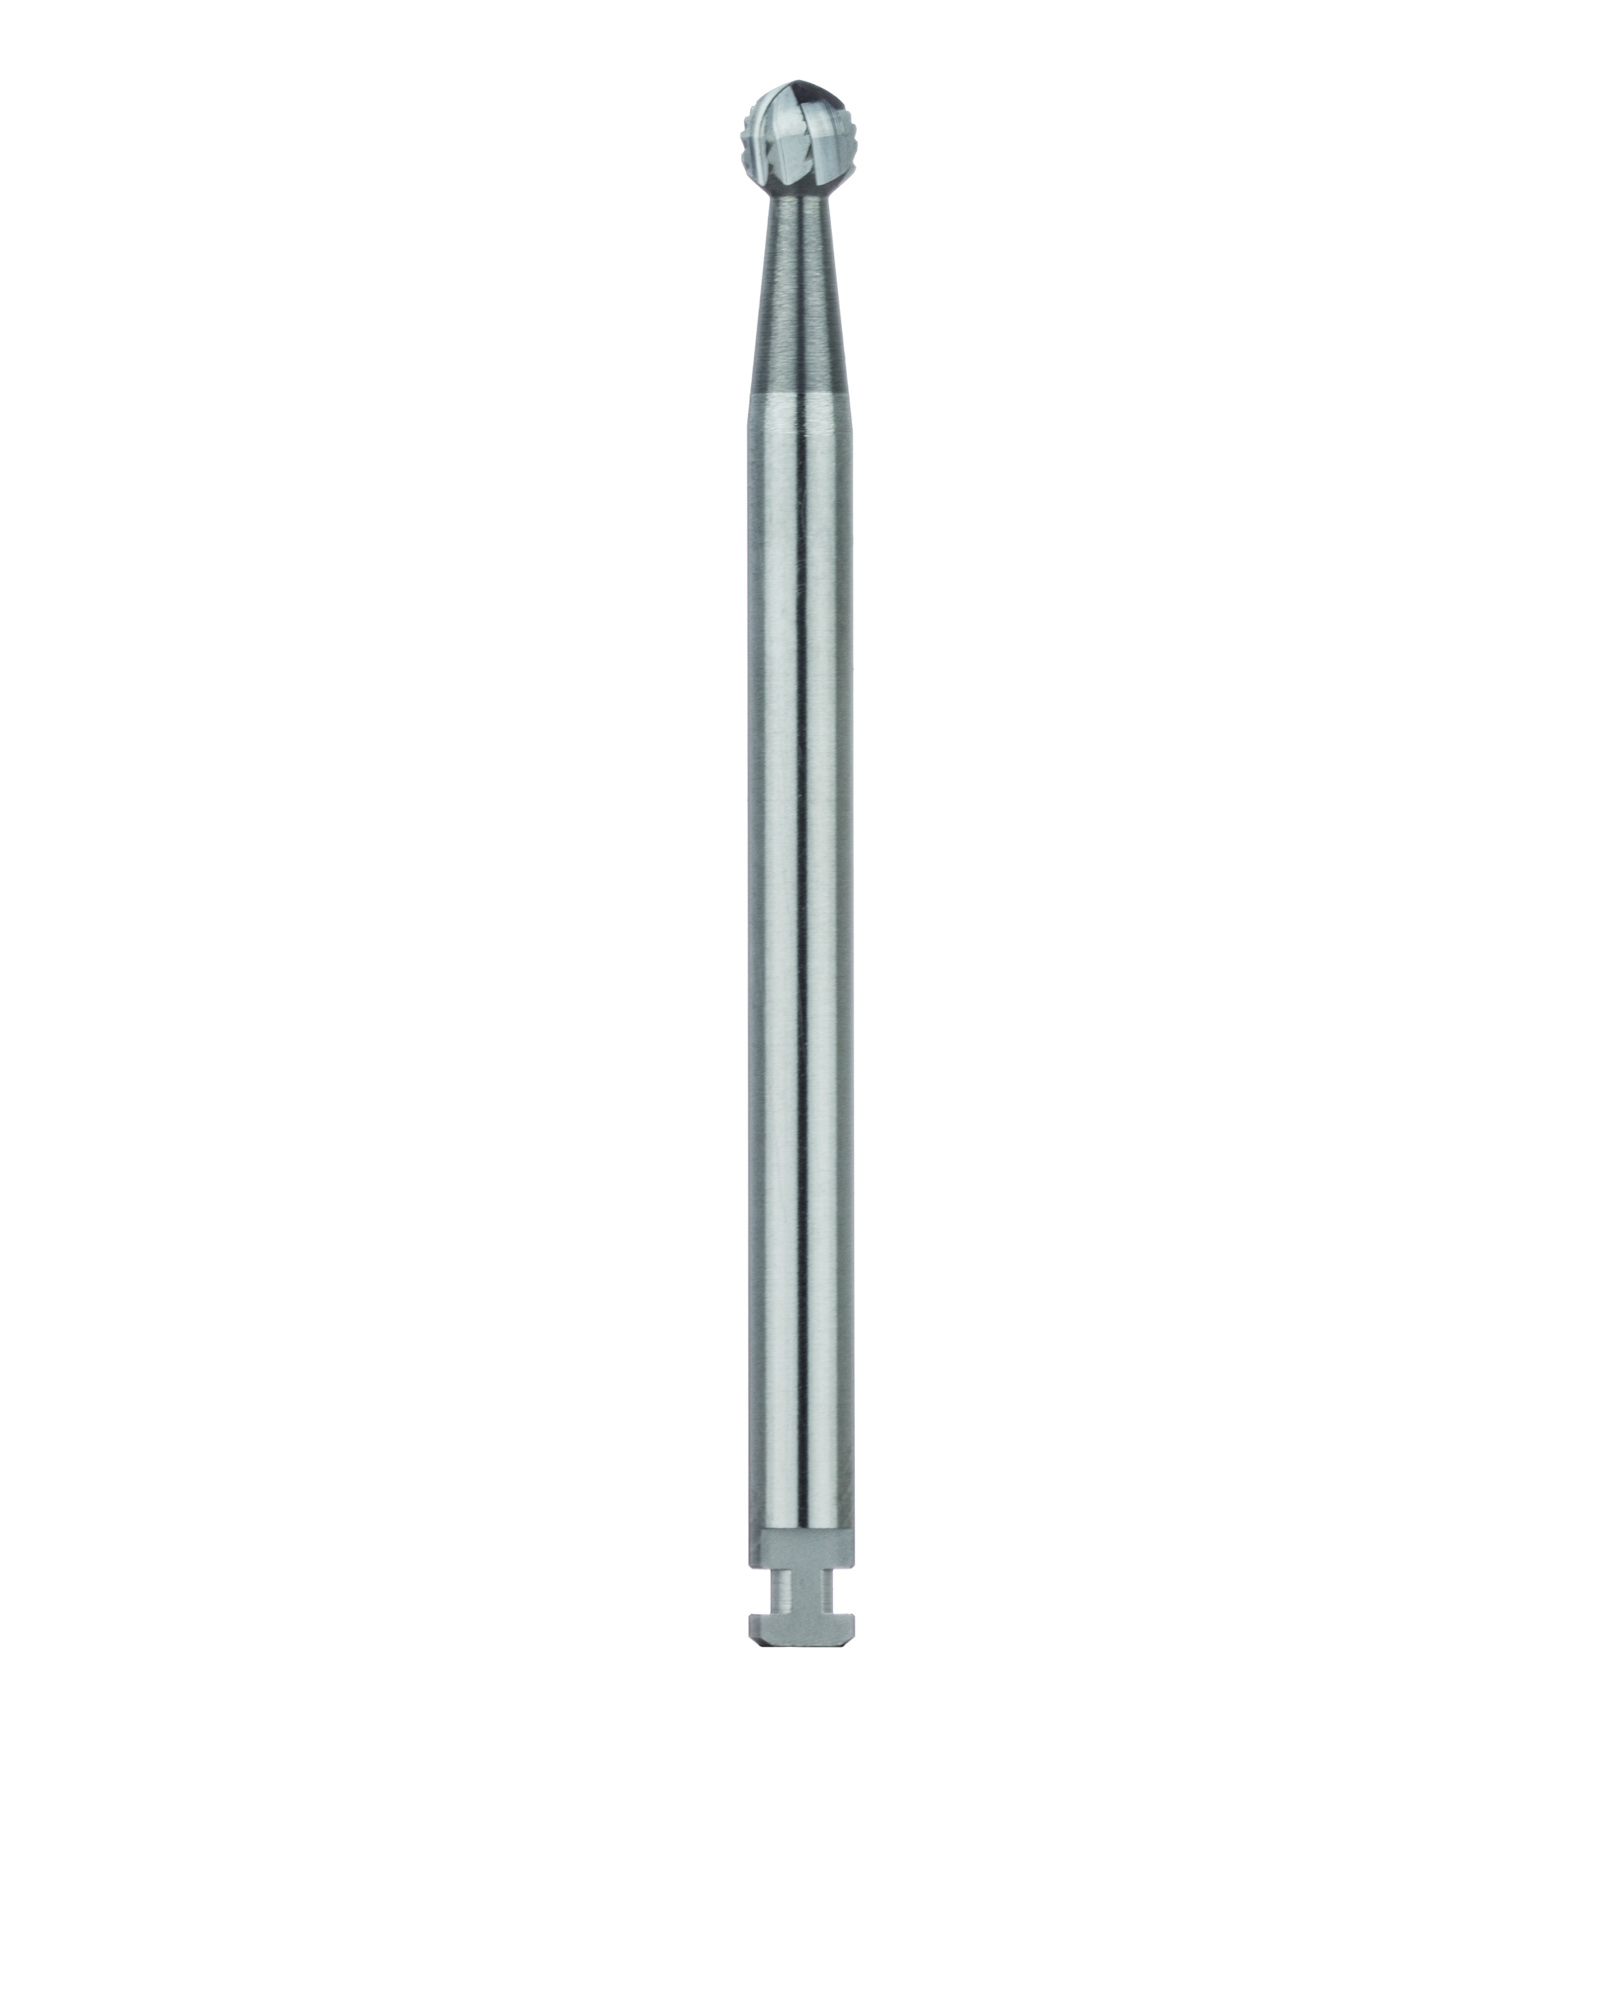 HM141A-027-RAX Surgical Round Carbide Bur, Cross Cut, 2.7mm Ø, RAX